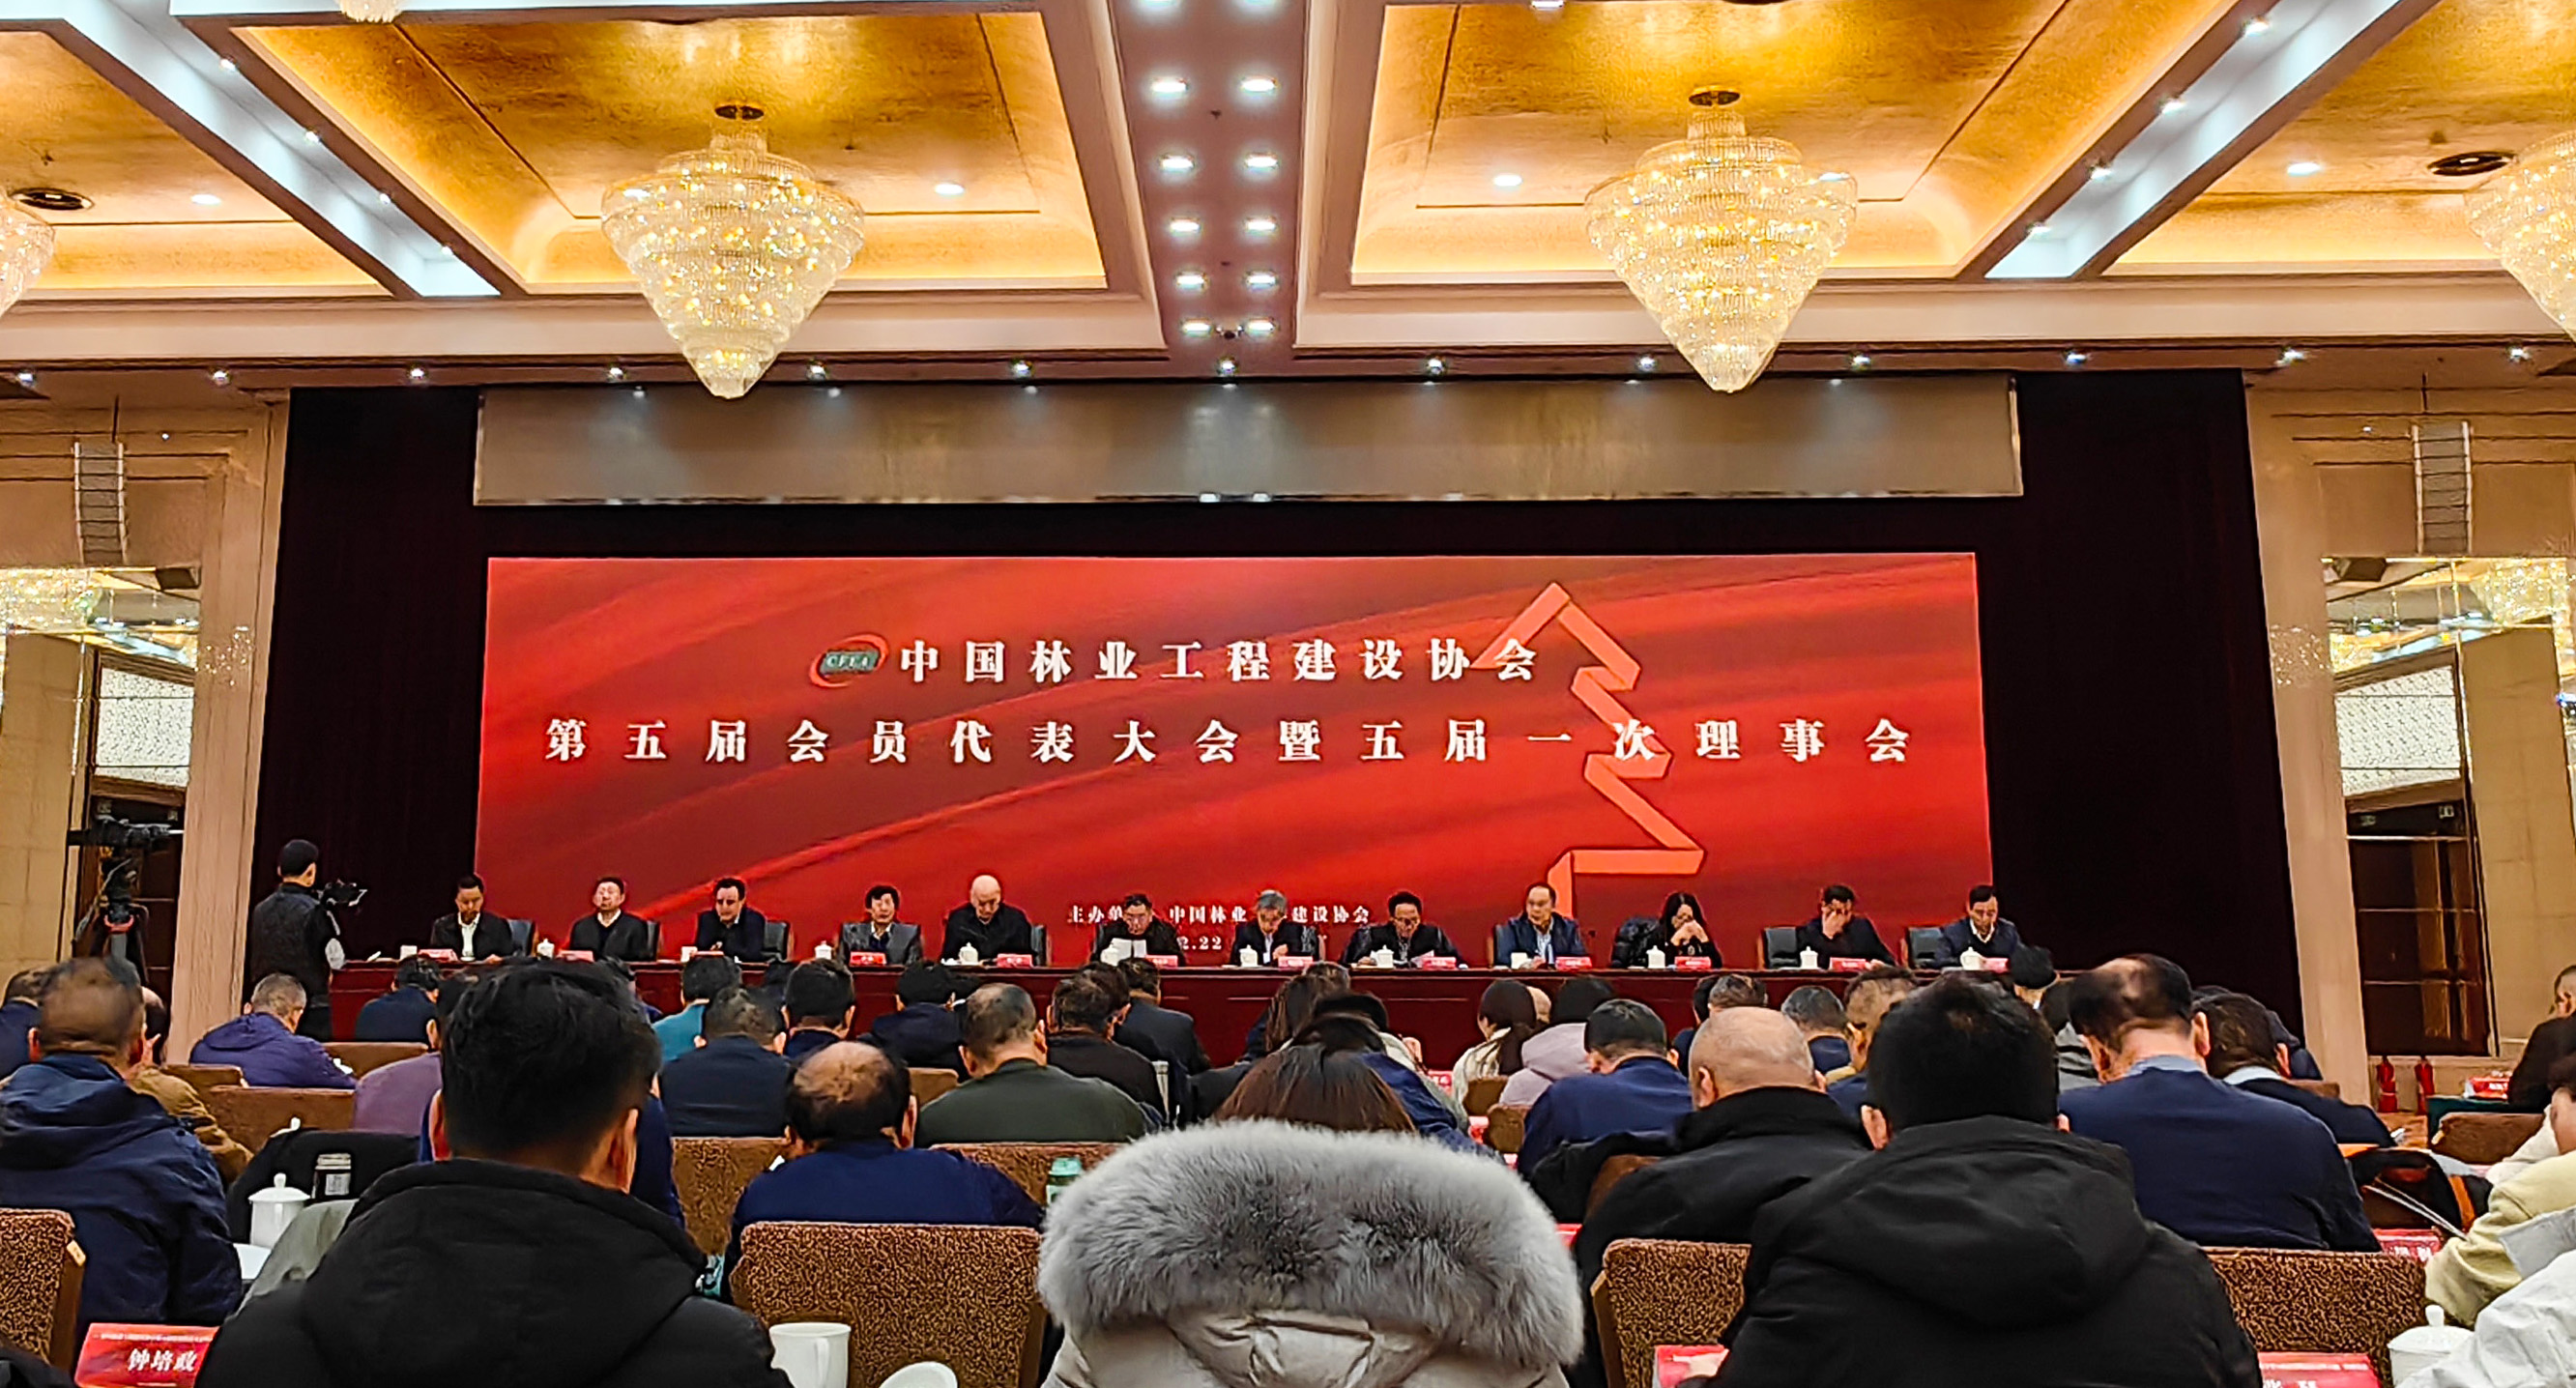 金莎娱乐公司成功当选中国林业工程建设协会第五届理事会理事单位